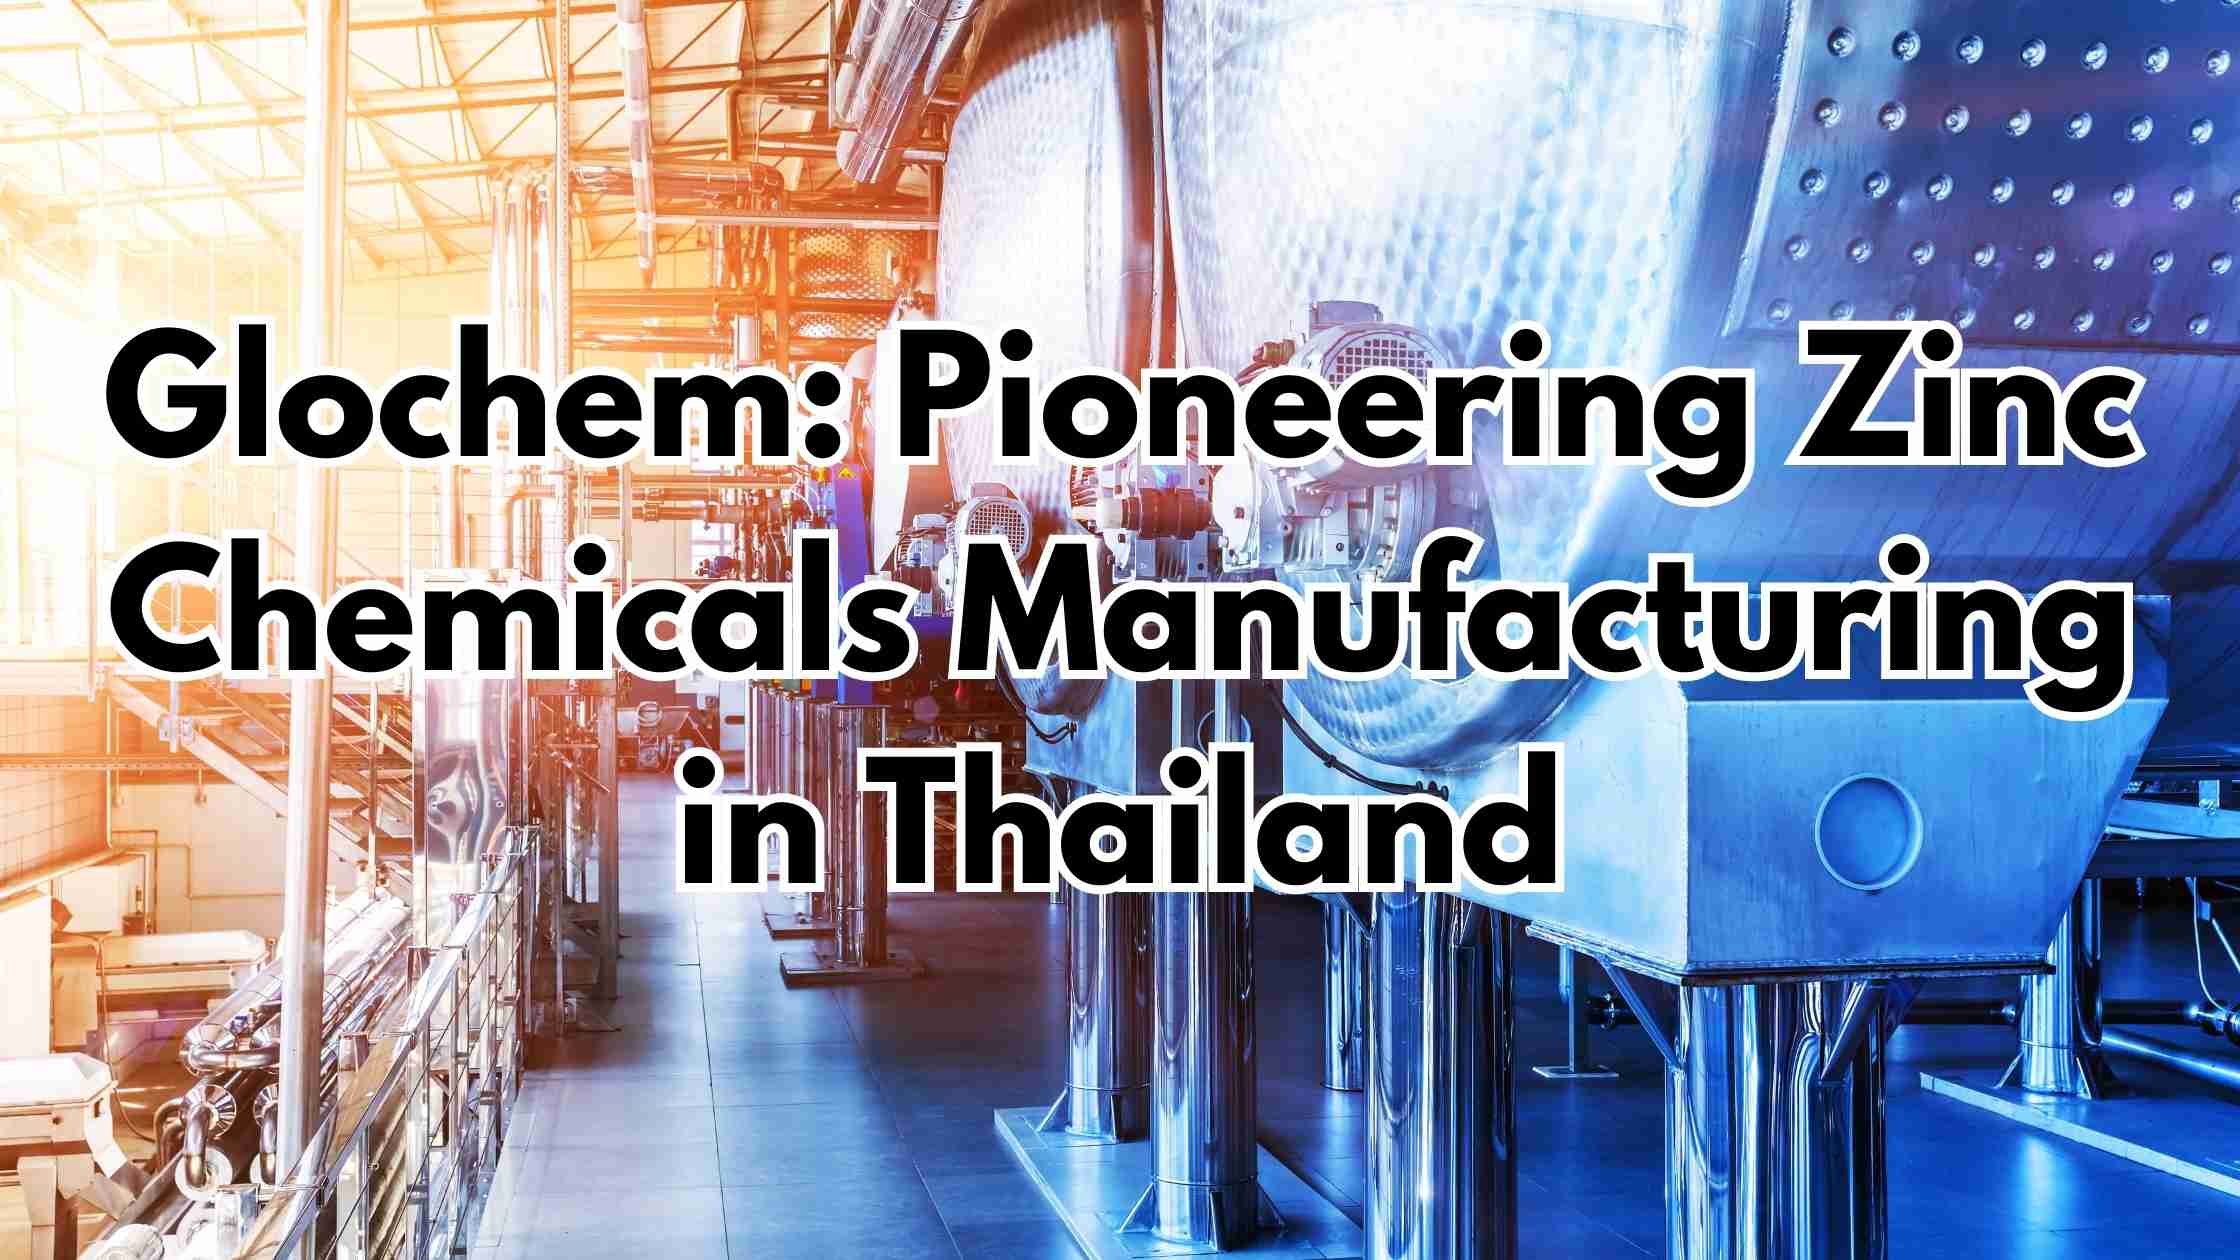 Glochem: Pioneering Zinc Chemicals Manufacturing in Thailand